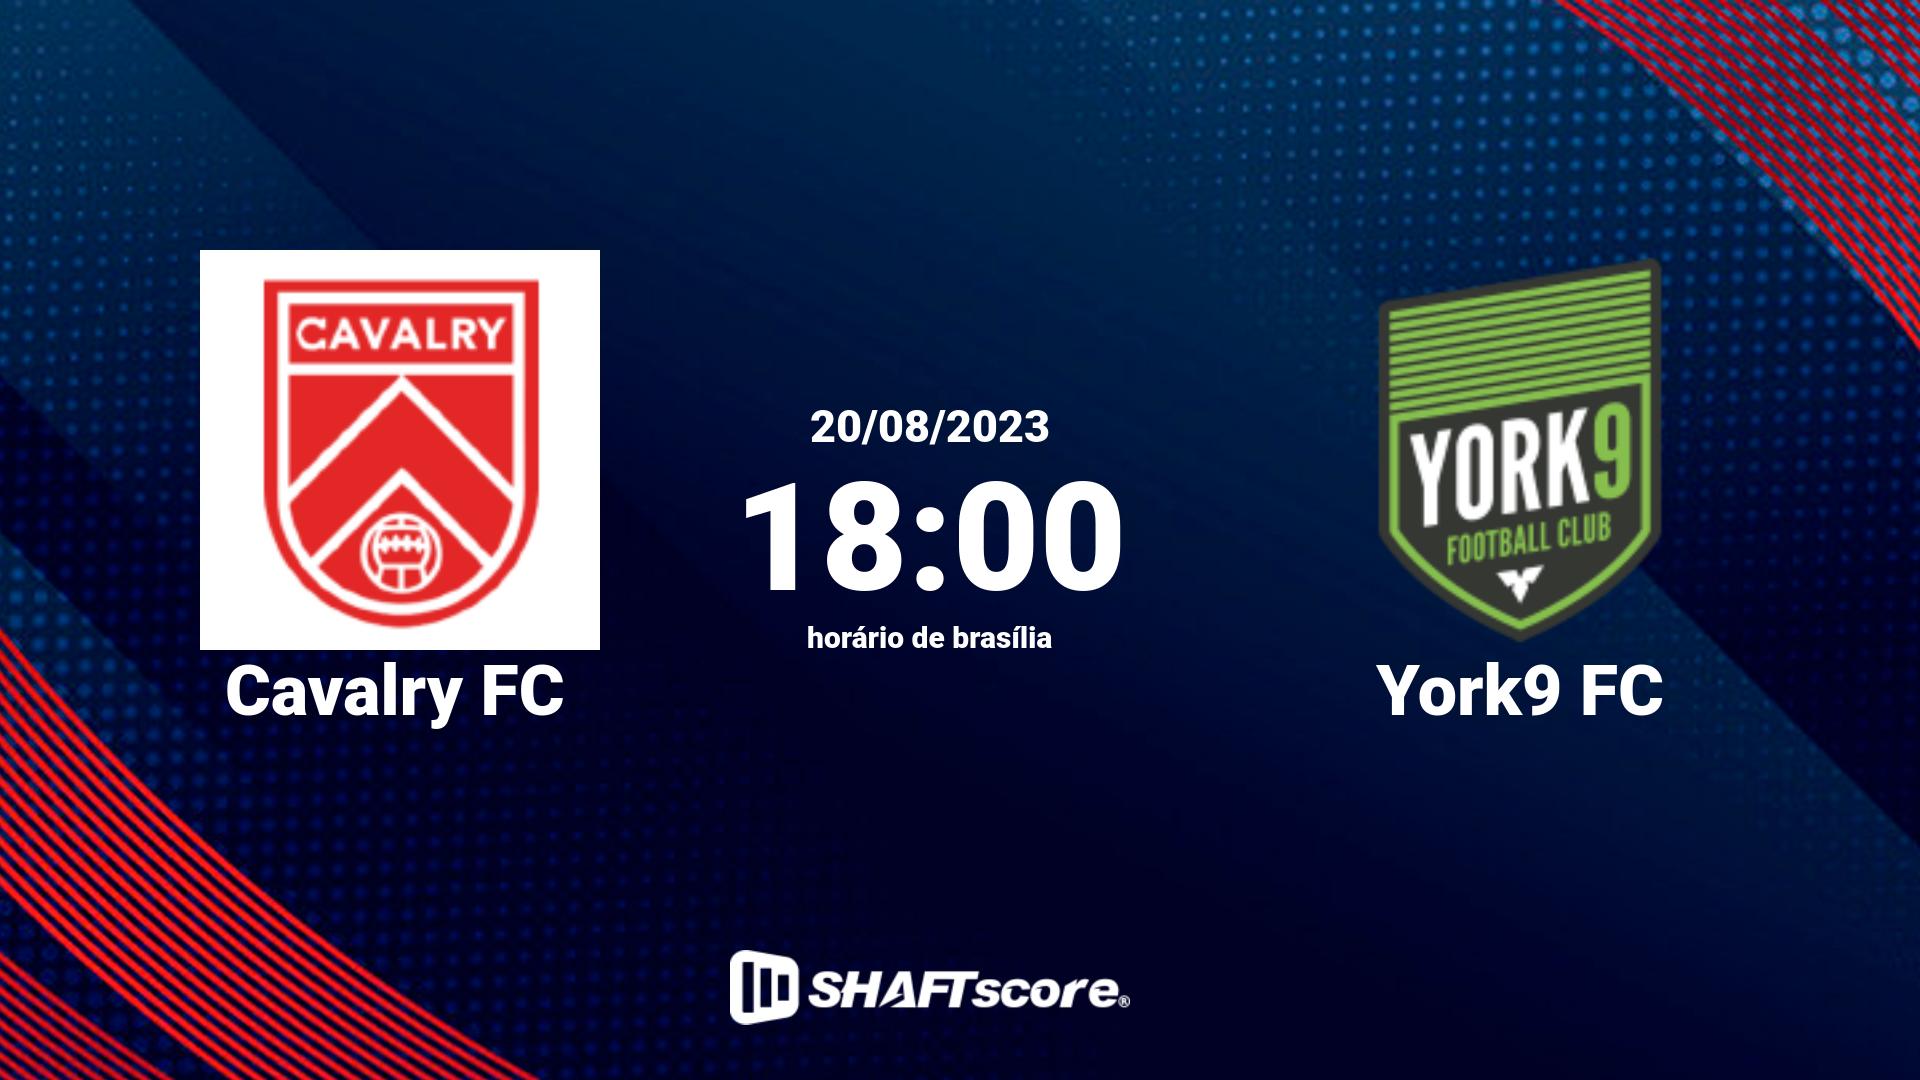 Estatísticas do jogo Cavalry FC vs York9 FC 20.08 18:00